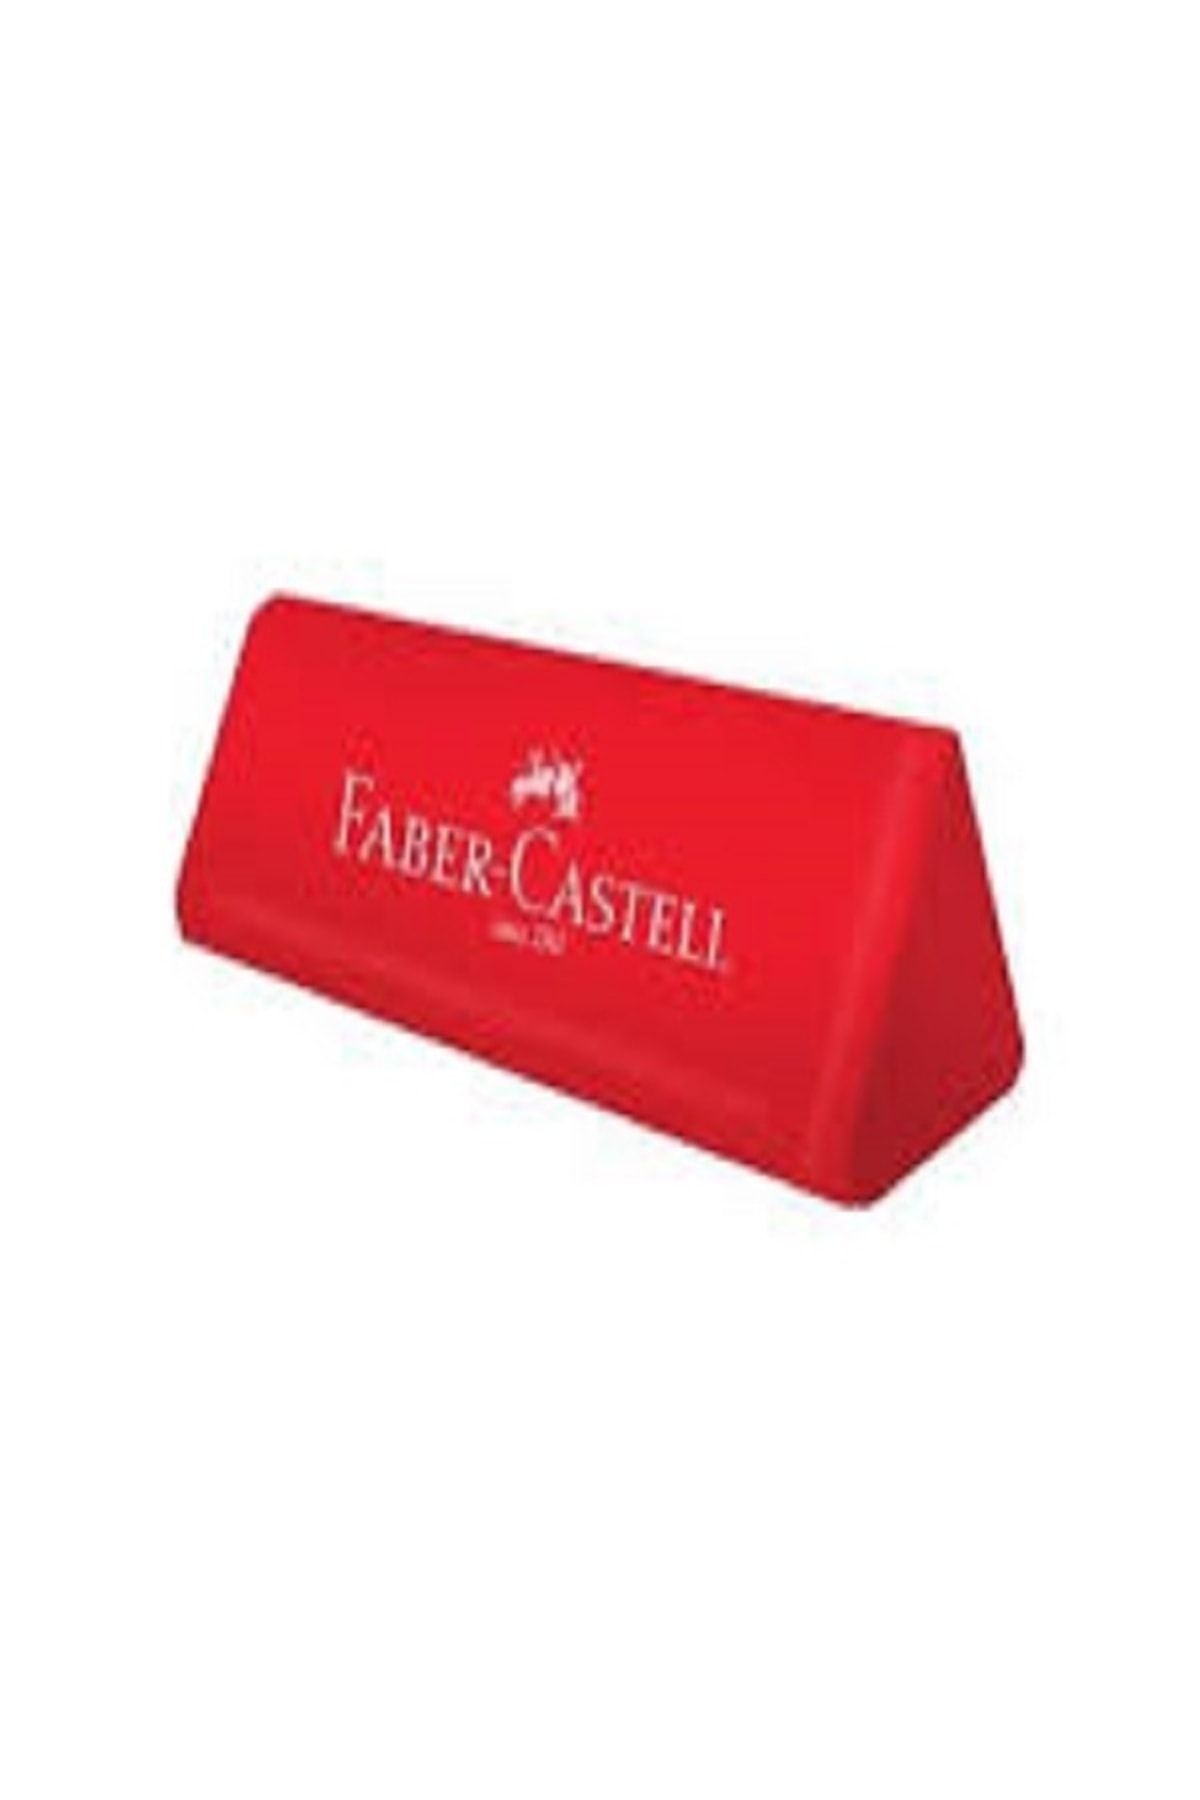 Faber Castell Faber Castel Okul Silgisi 187232